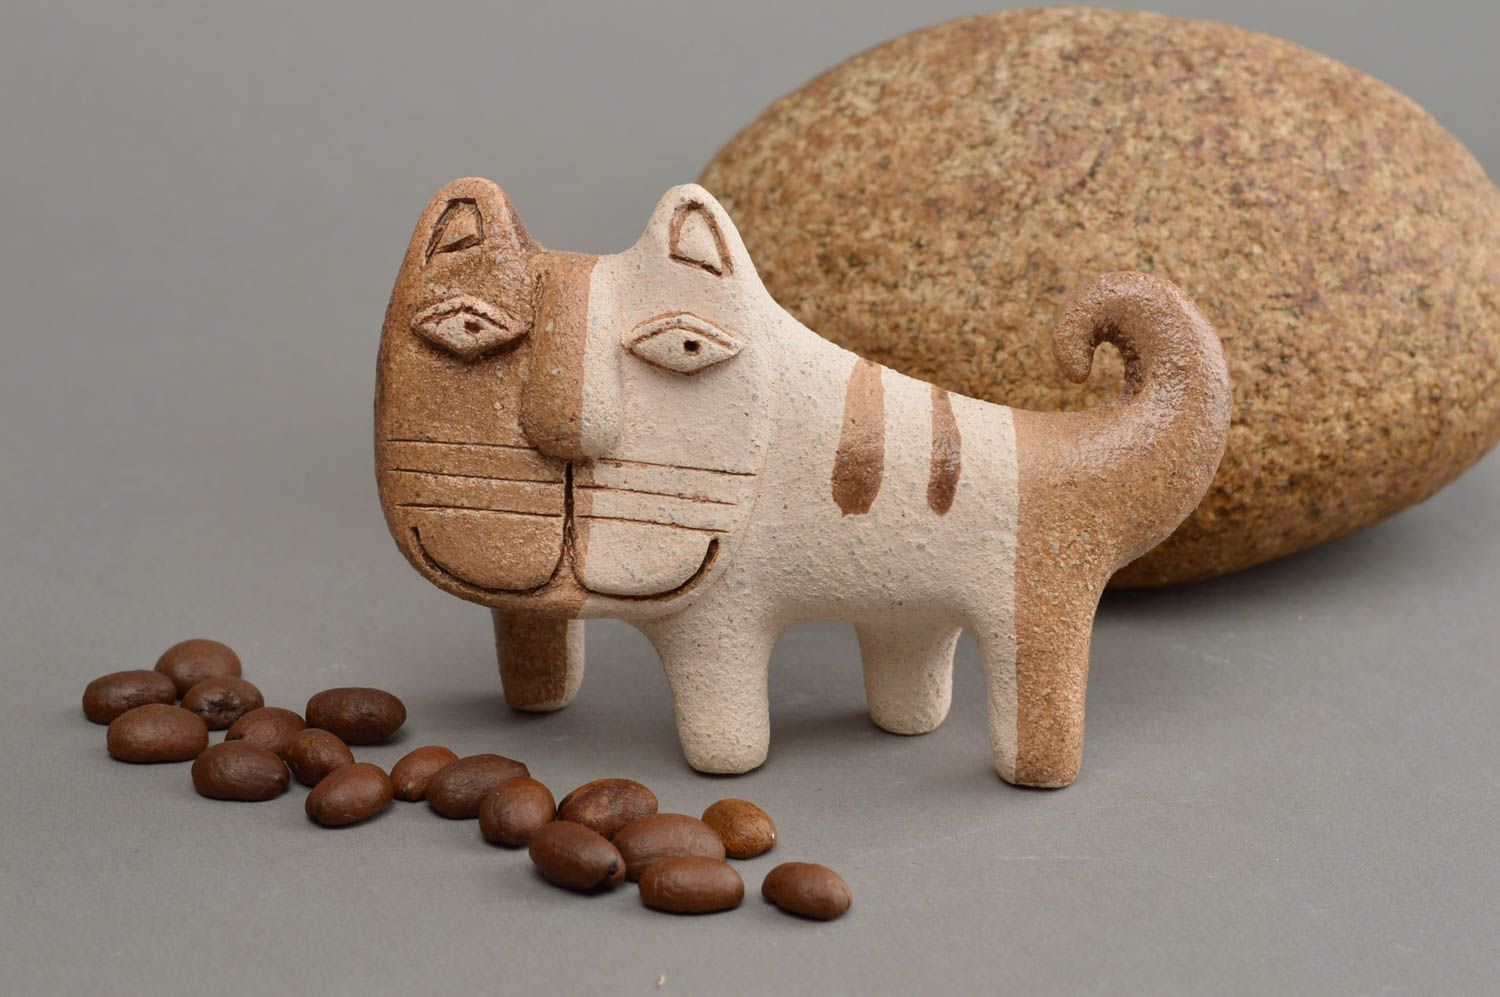 Статуэтка из шамотной глины ручной работы расписанная глазурью в виде кота фото 1